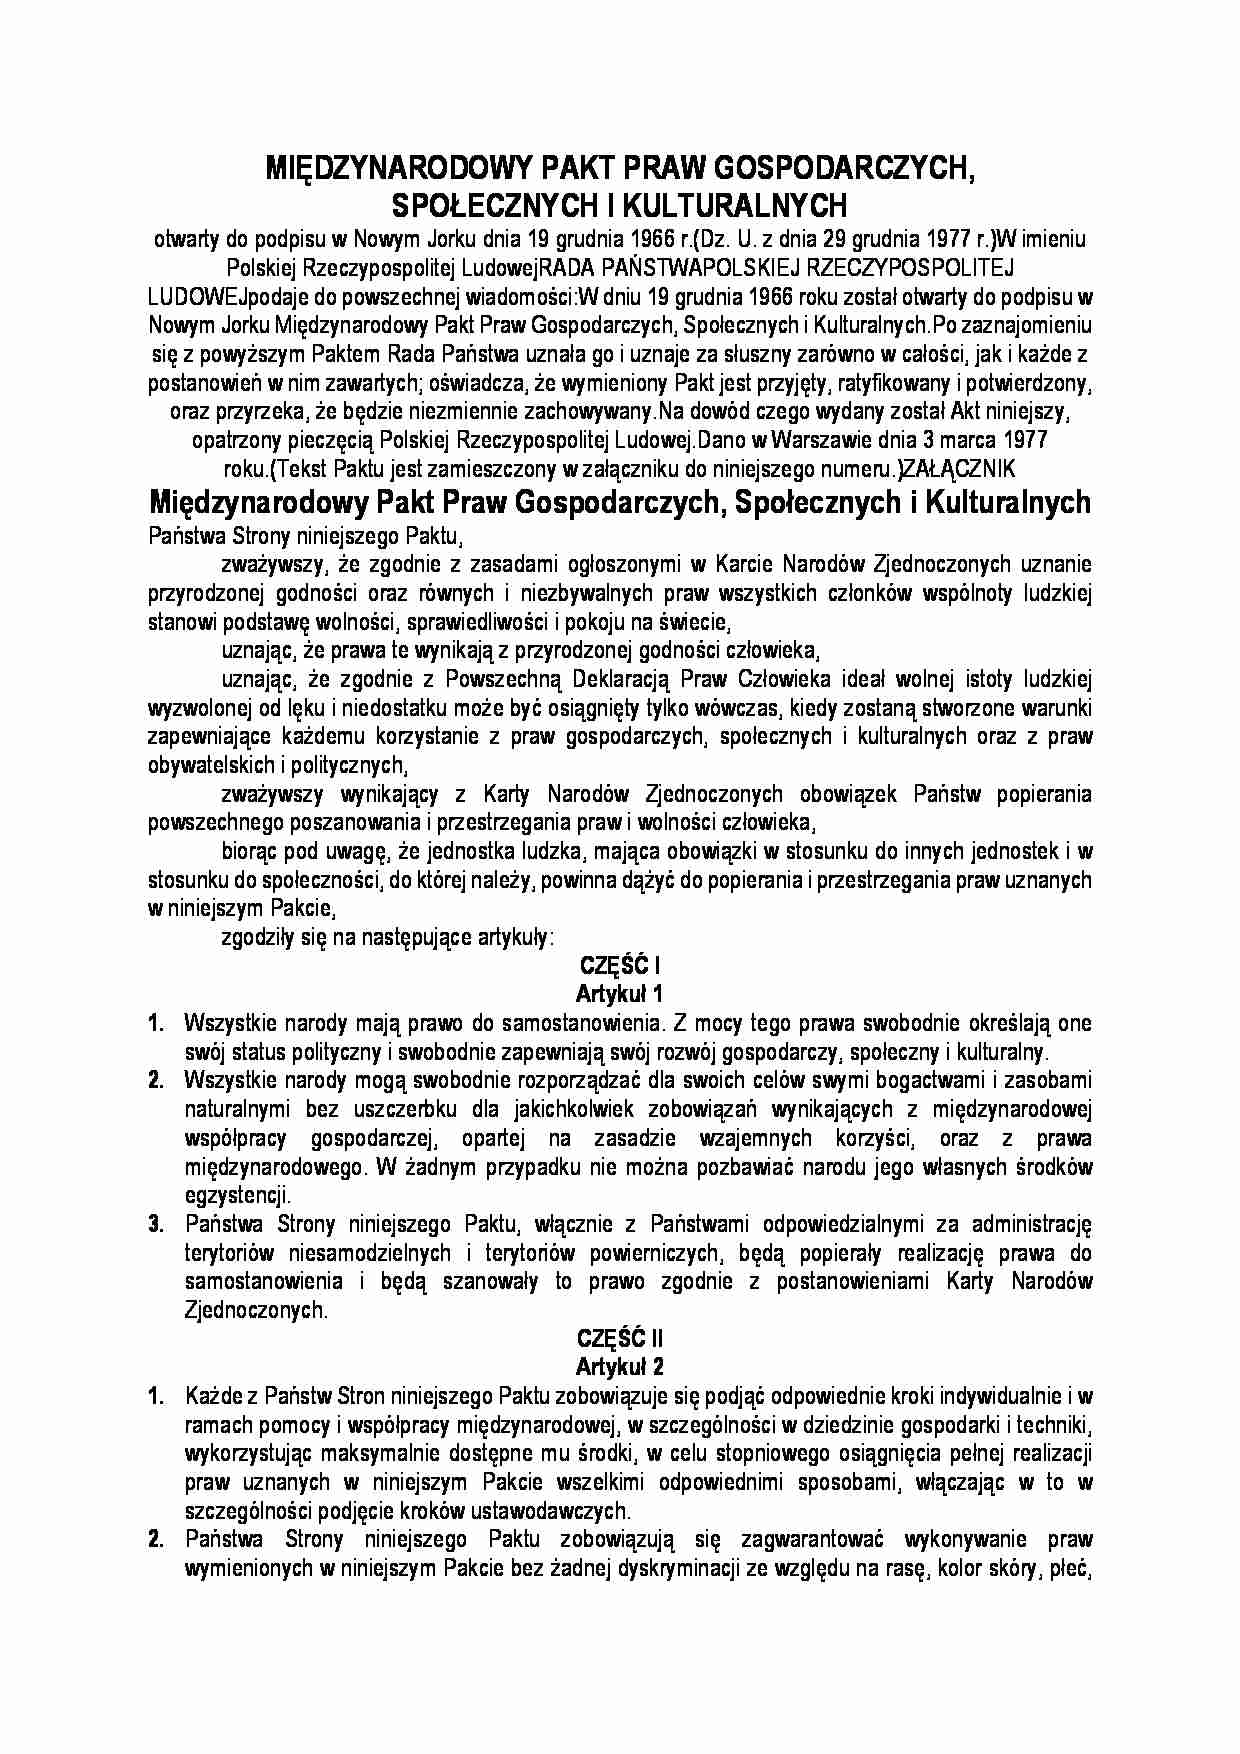 Miedzynarodowy Pakt Praw Gospodarczych Spolecznych i Kulturalnych - strona 1